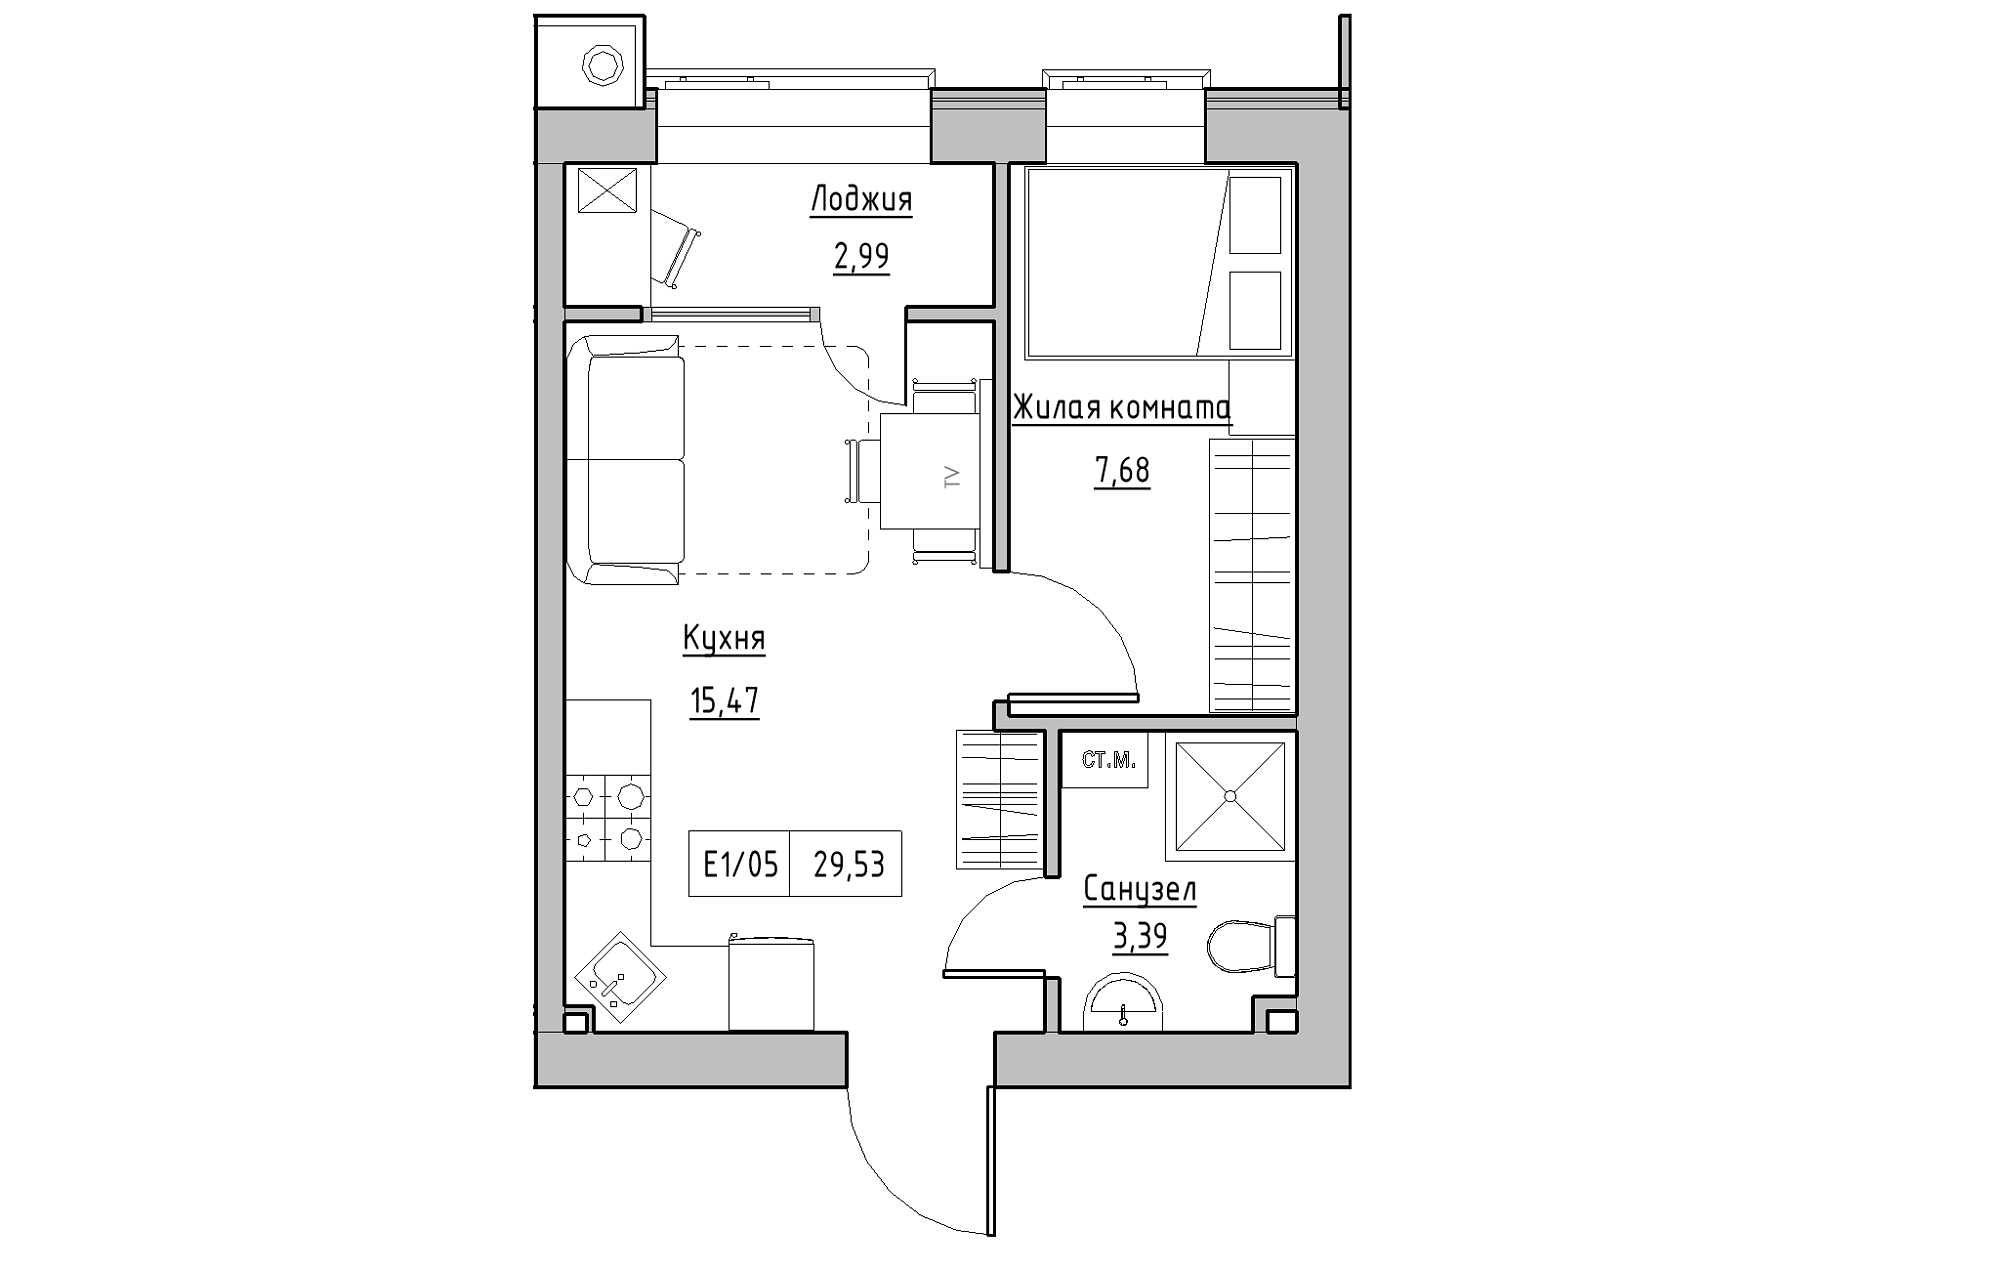 Планировка 1-к квартира площей 29.53м2, KS-013-04/0008.